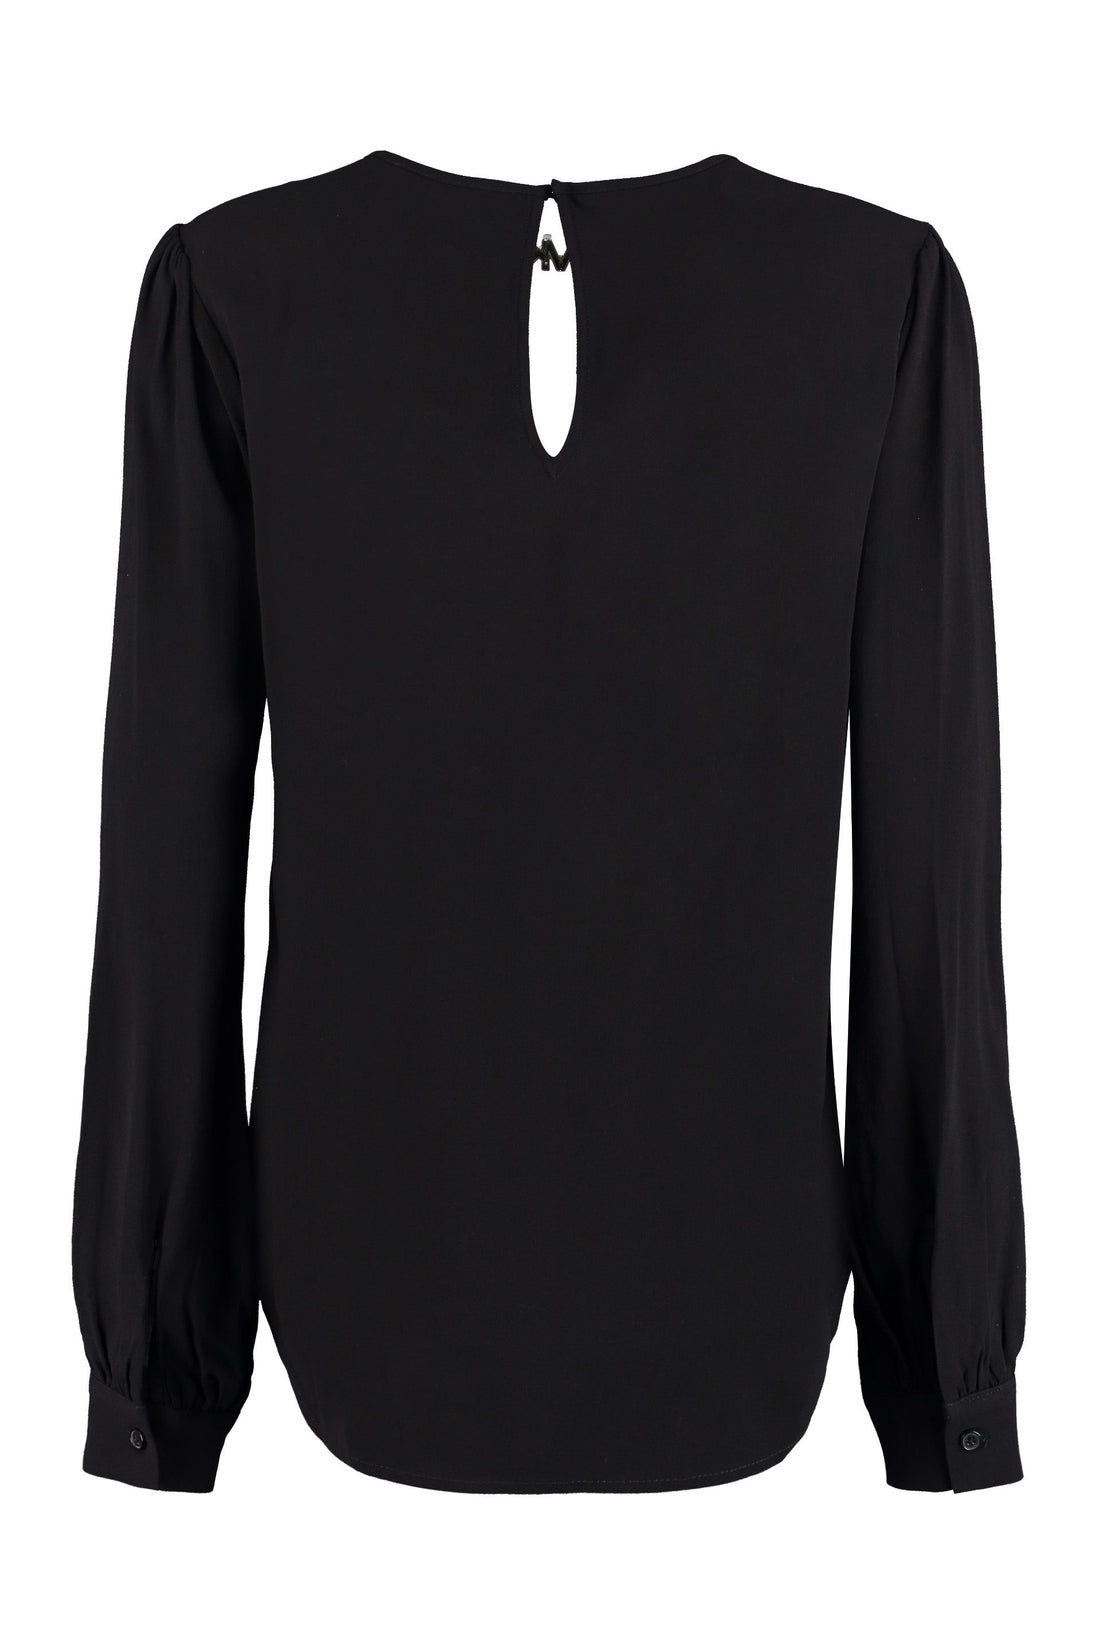 MICHAEL MICHAEL KORS-OUTLET-SALE-Logo detail crêpe blouse-ARCHIVIST